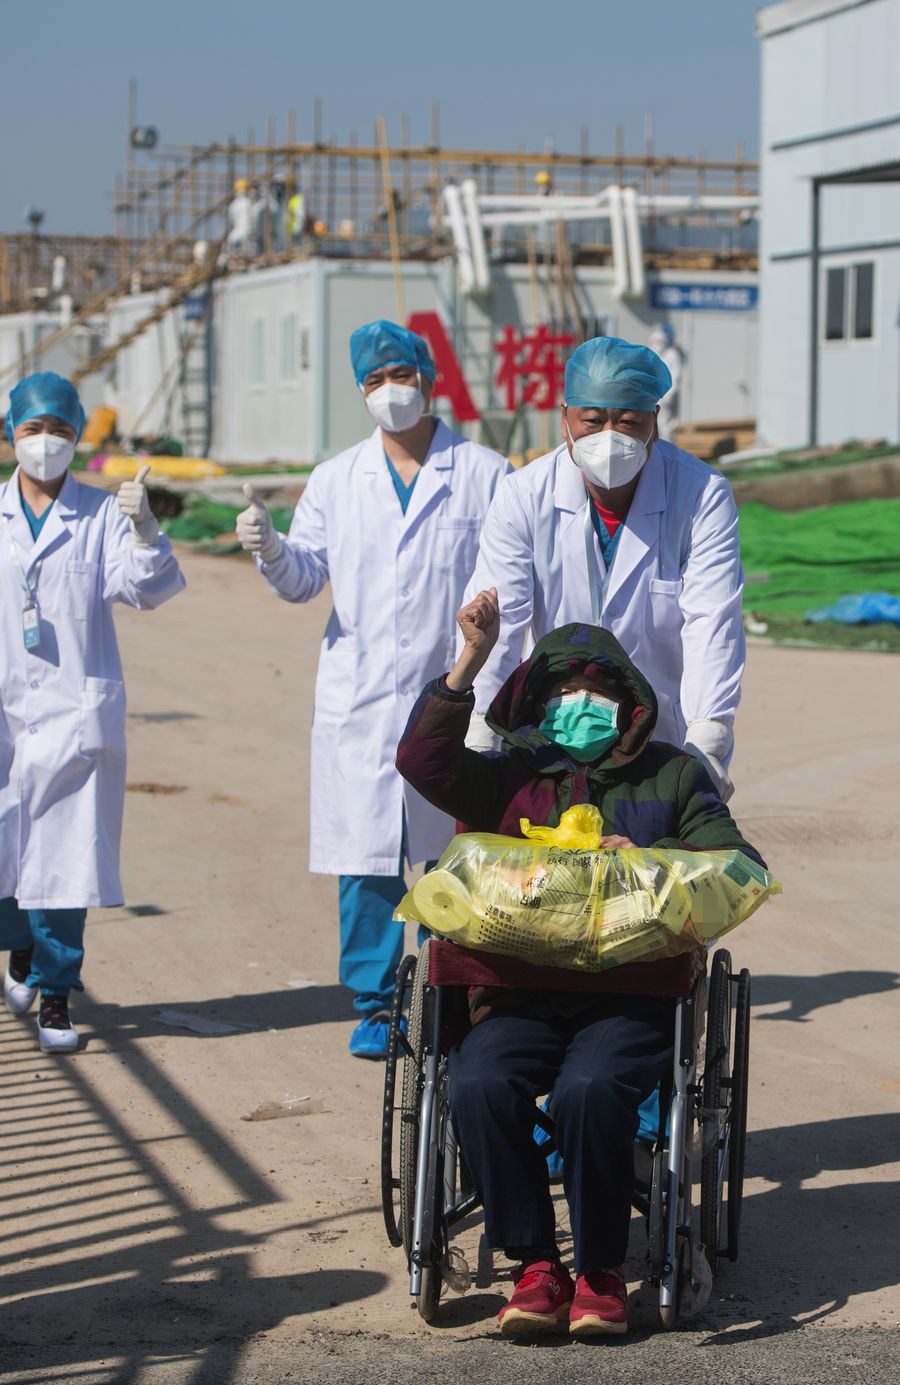 مستشفى ليشنشان في مدينة ووهان يشهد خروج أول اثنين من المصابين بفيروس كورونا الجديد منه بعد تعافيهما